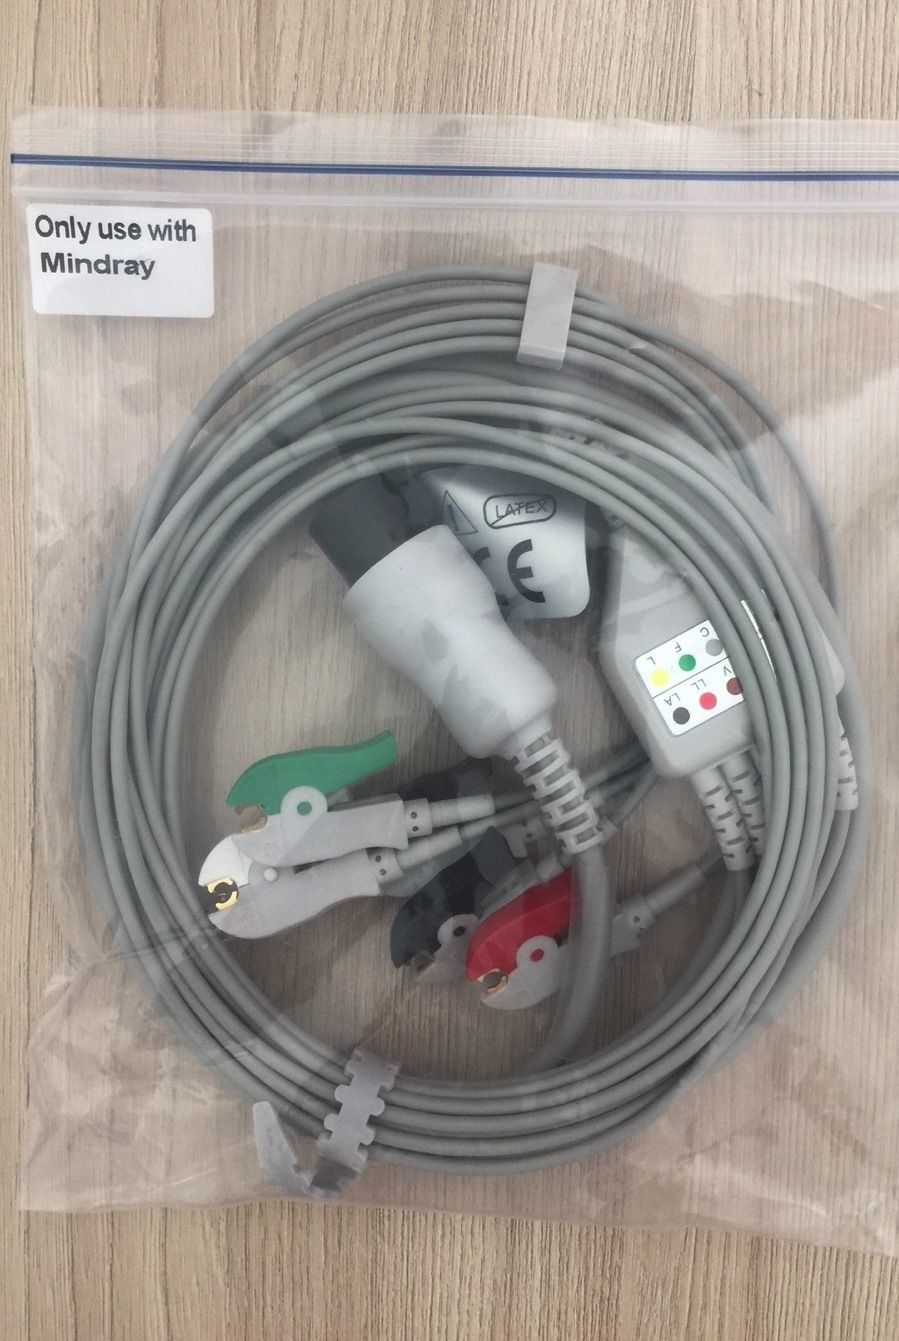 ECG 5 Lead wires cable for Monitor Mindray_สายอีซีจีเคเบิ้ลแบบ 5 ลีด สำหรับเครื่องมอนิเตอร์ มายด์เรย์ Mindray